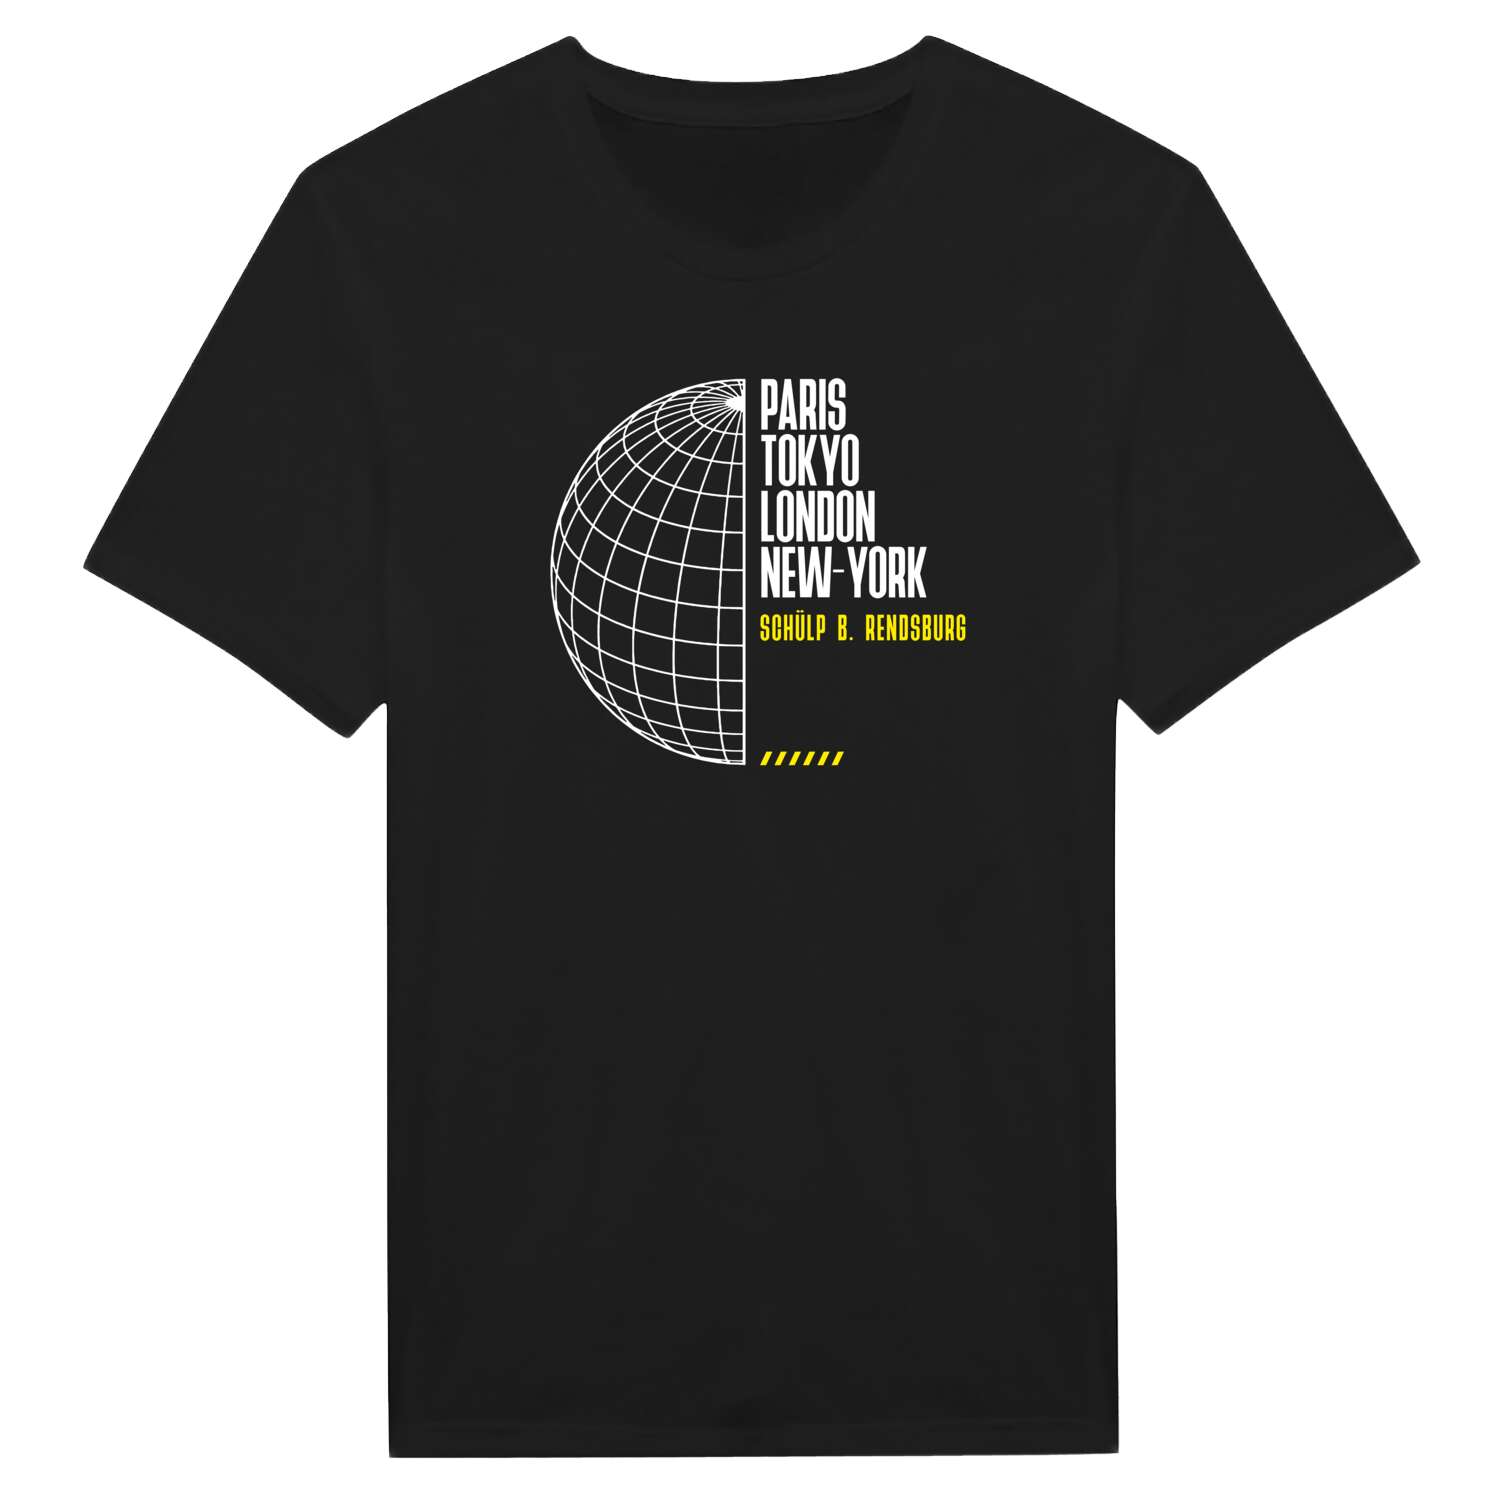 Schülp b. Rendsburg T-Shirt »Paris Tokyo London«